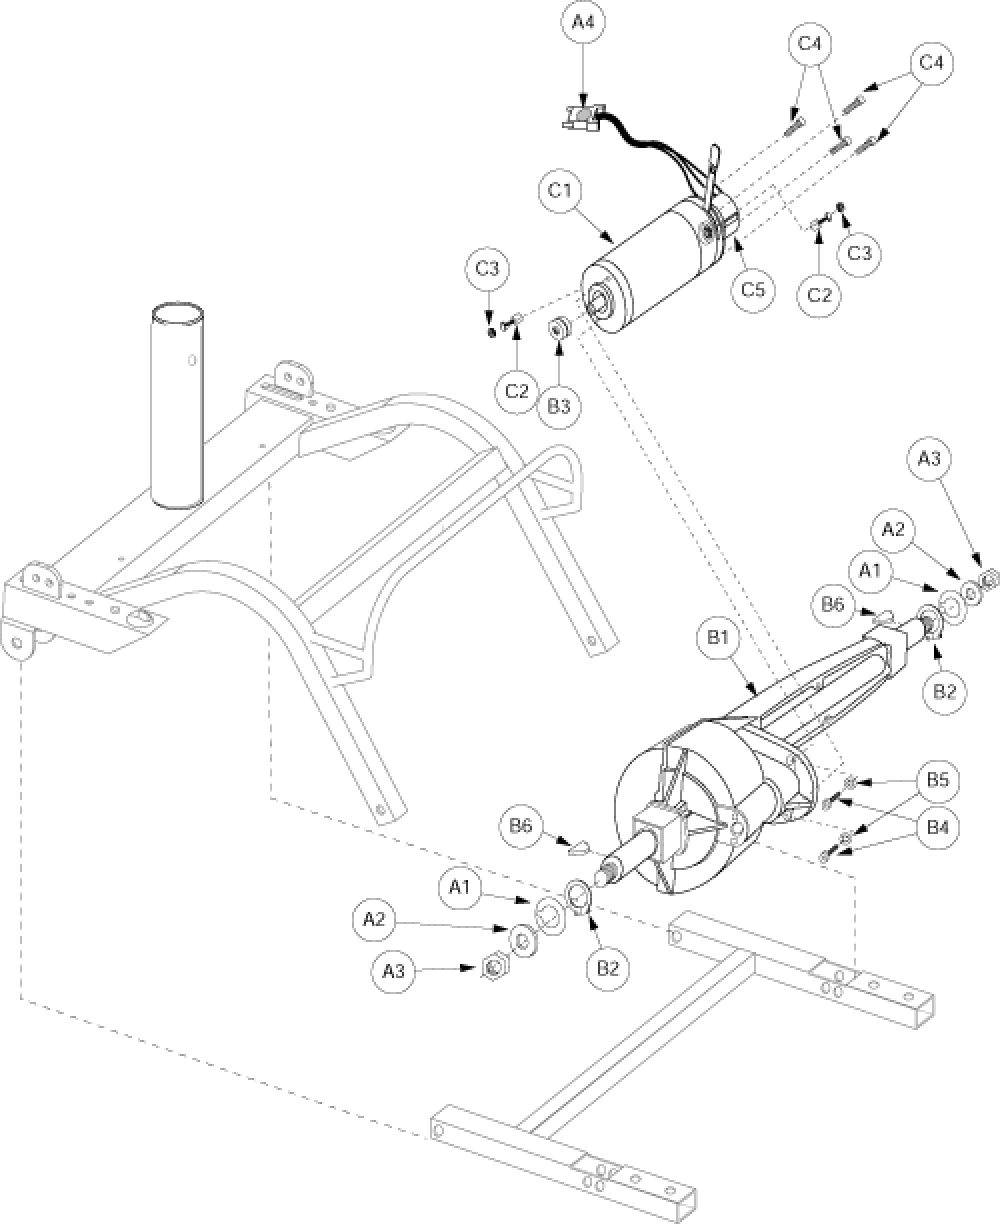 Drive Assembly - Gen. 3 parts diagram